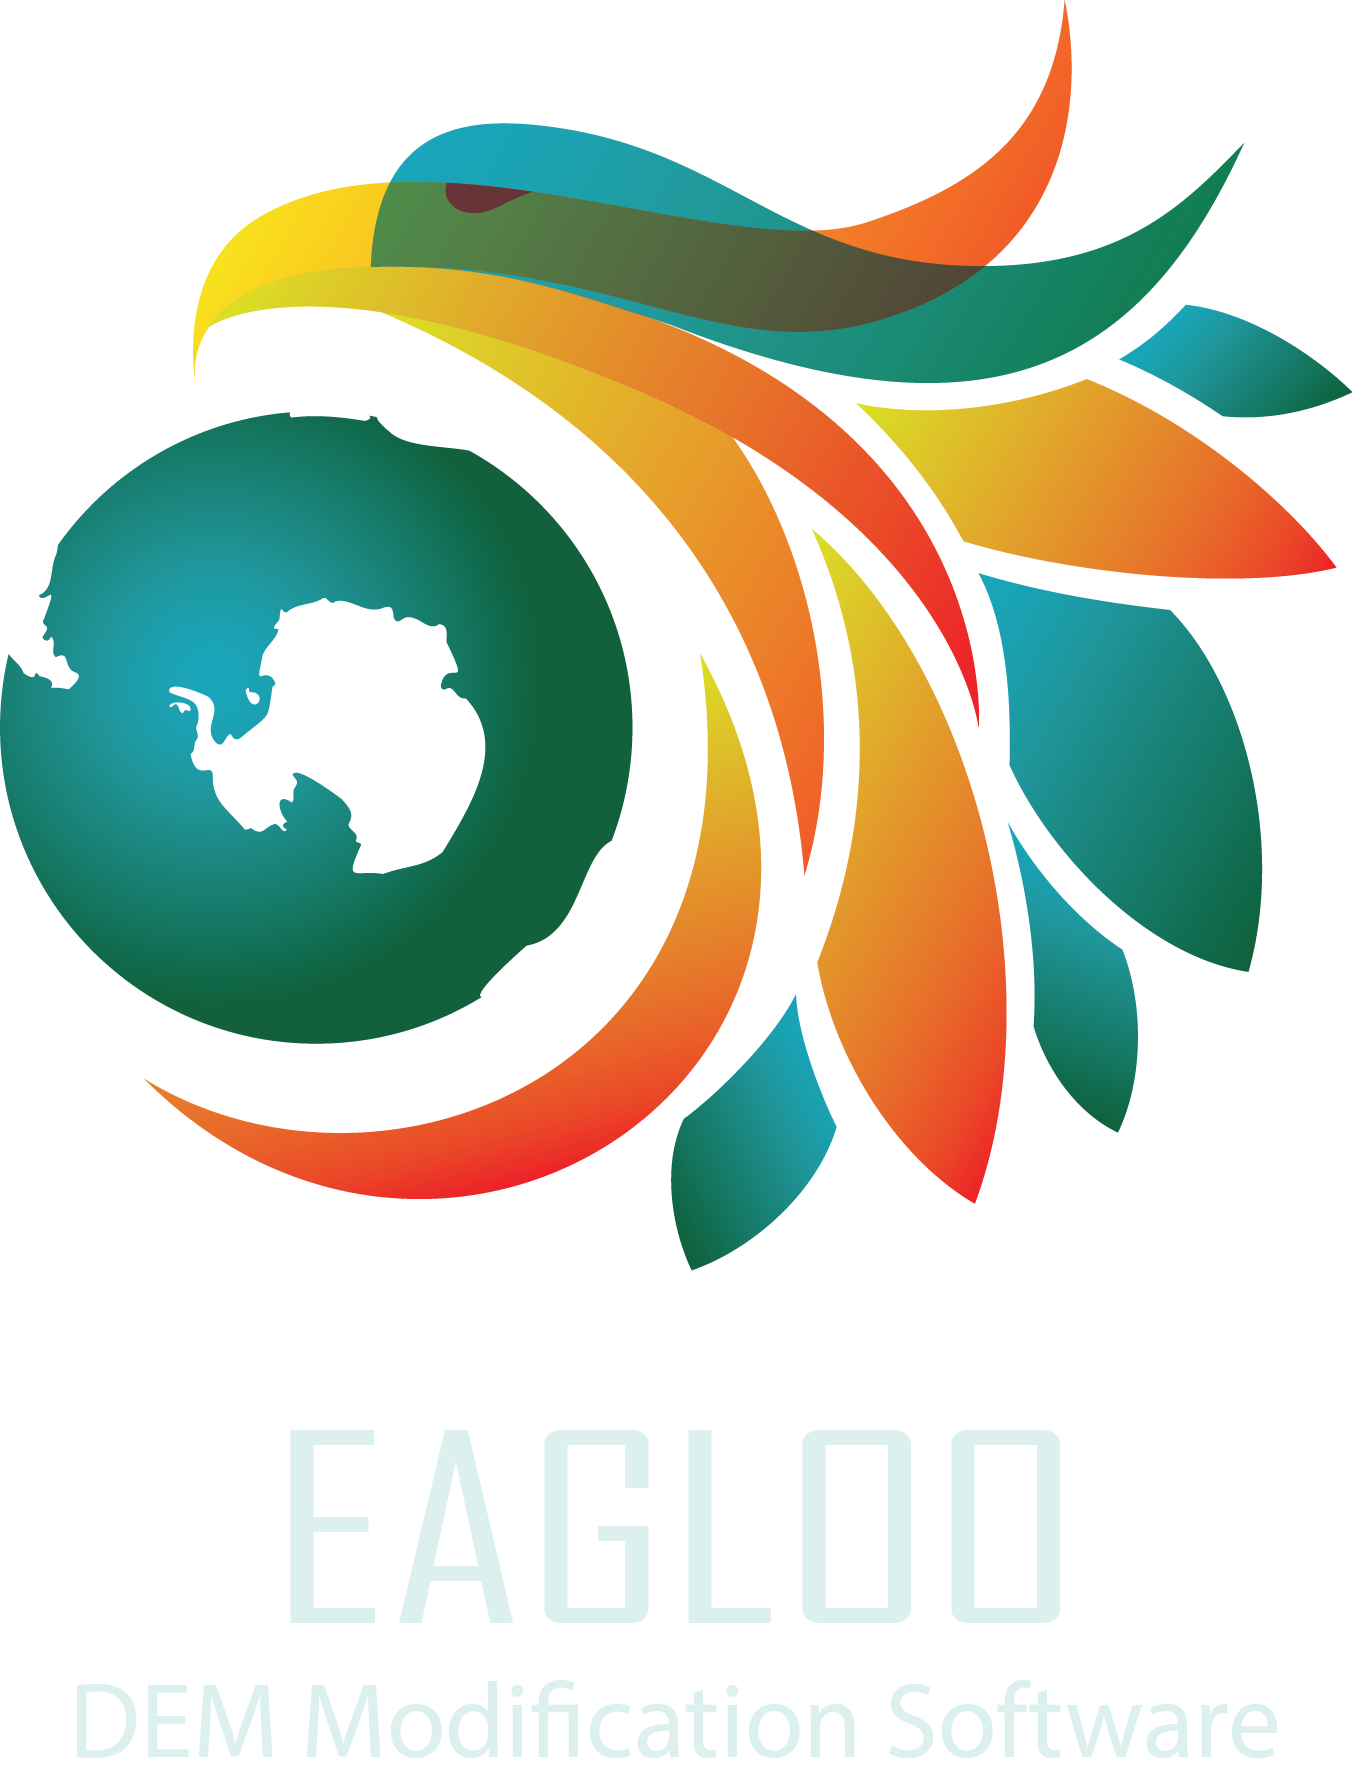 Eagloo - software for co-registering Digital Elevation Models